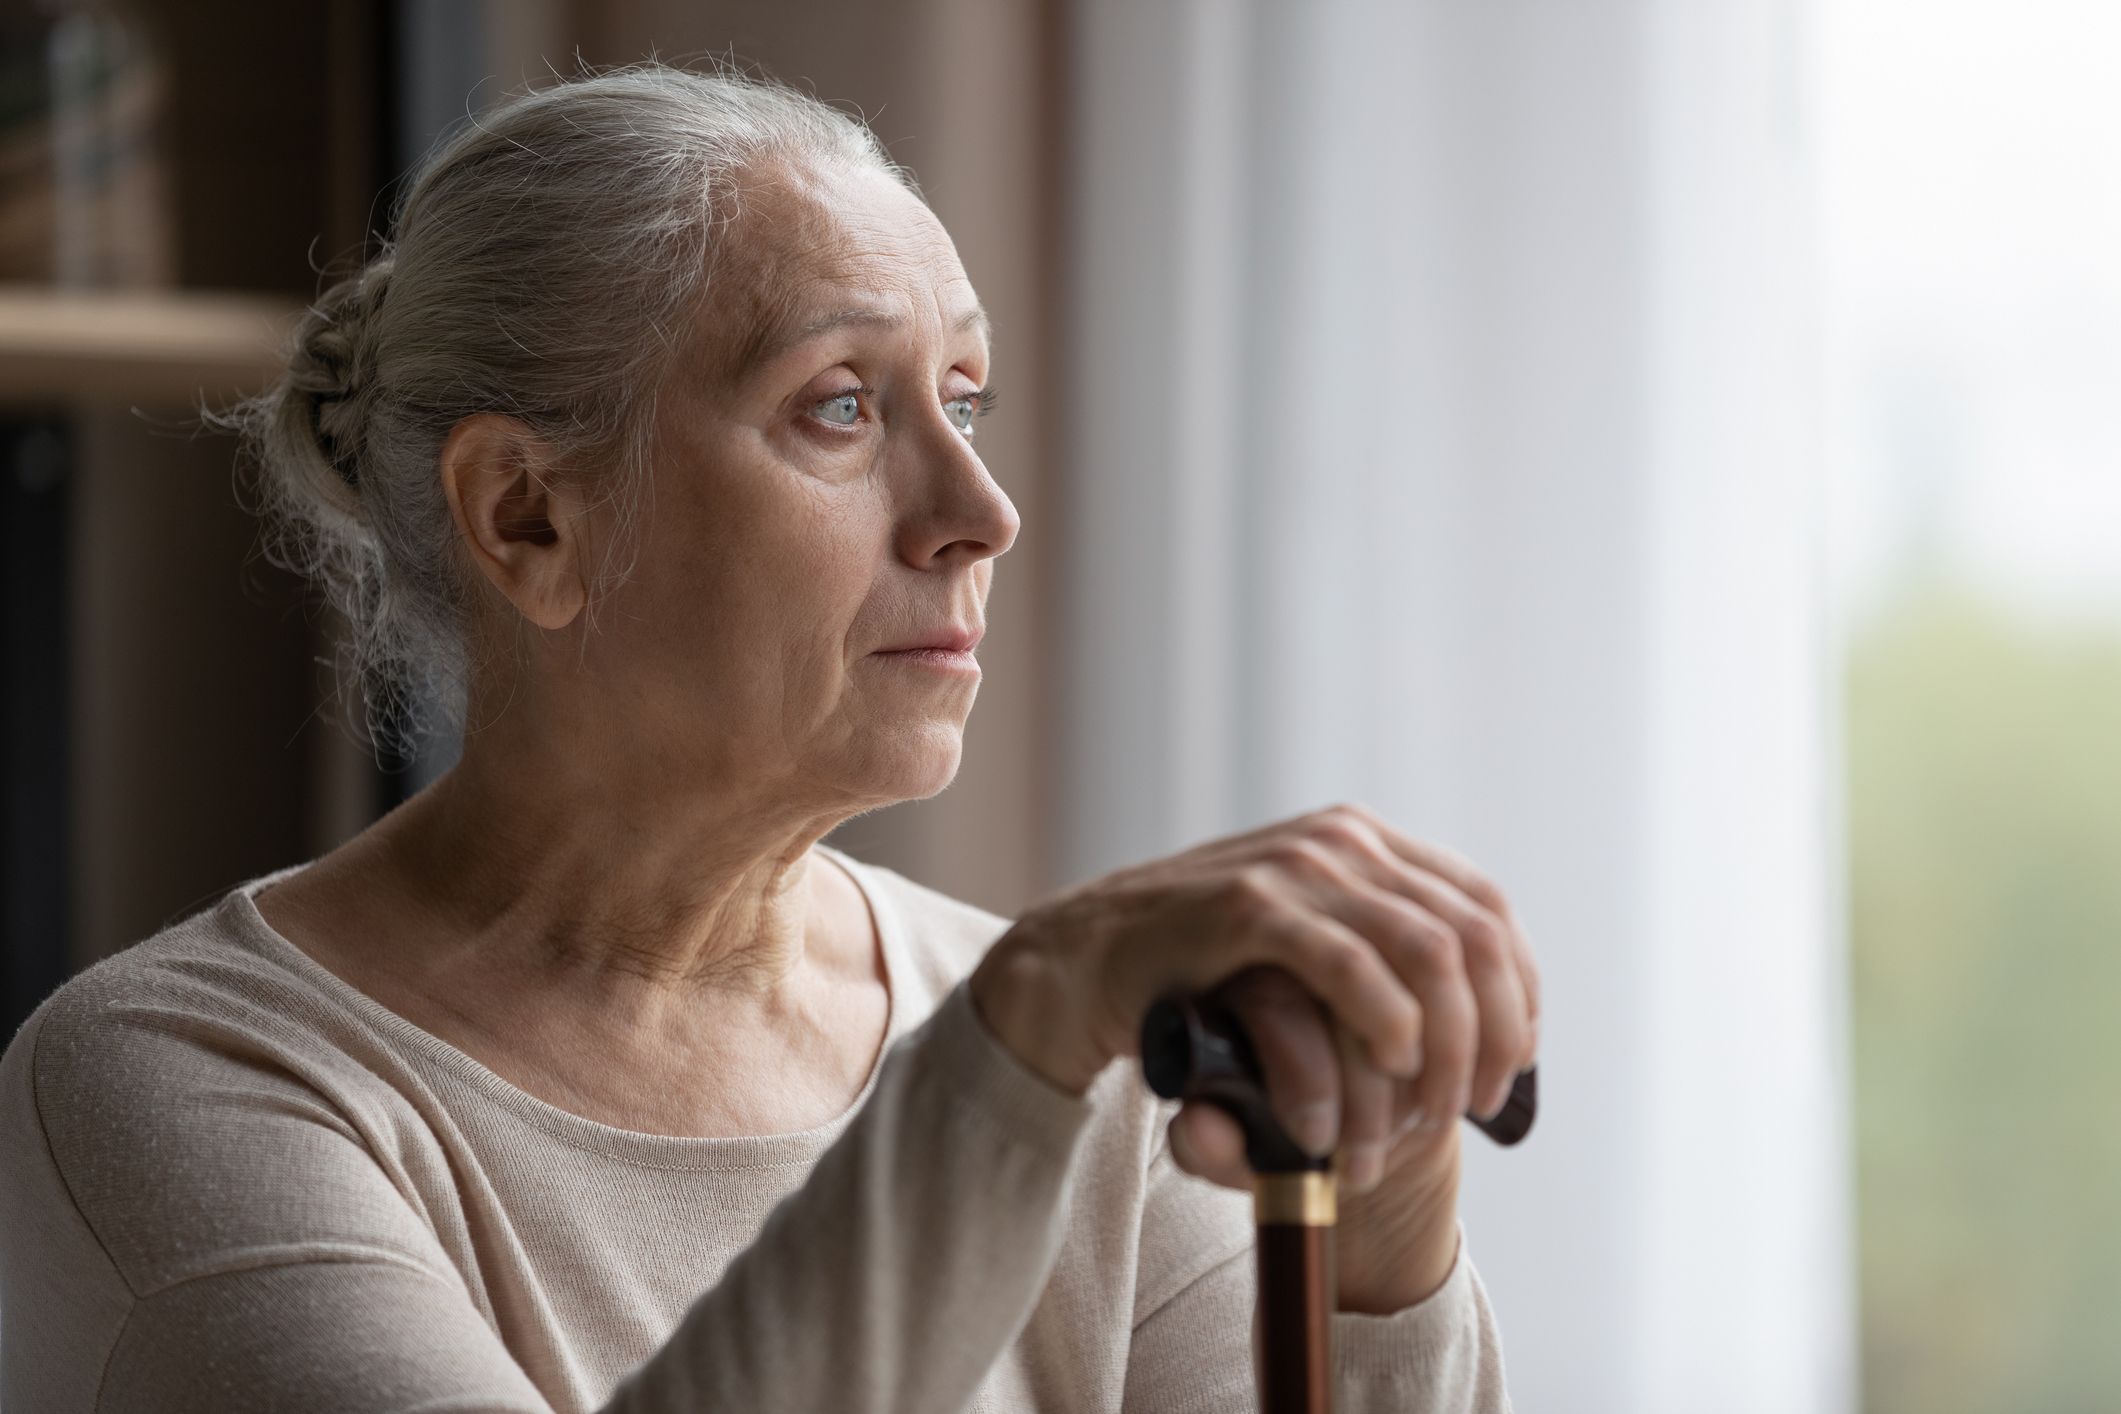 Elderly woman looks out window